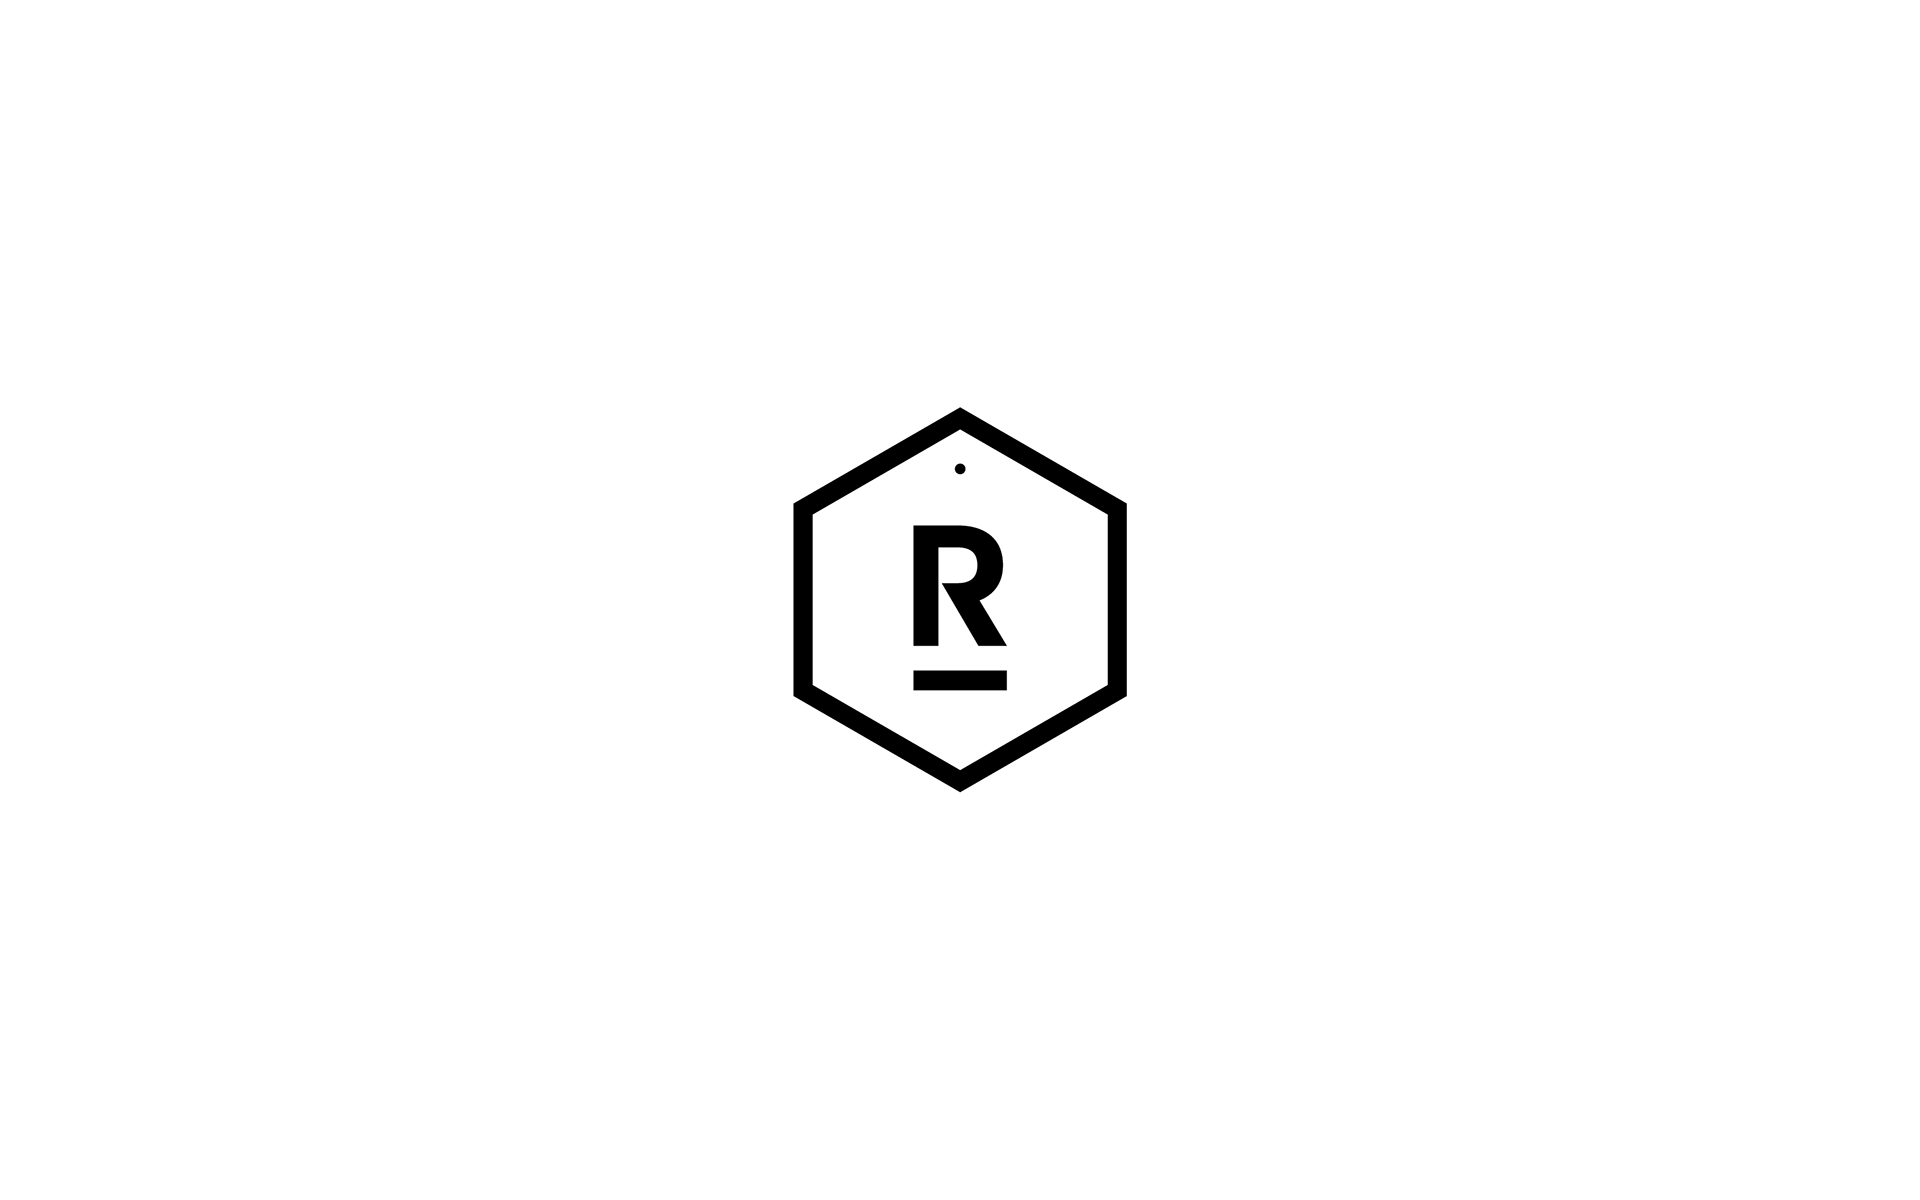 Random Logo - Jose David Barjola Design Portfolio - Random Logos v.2